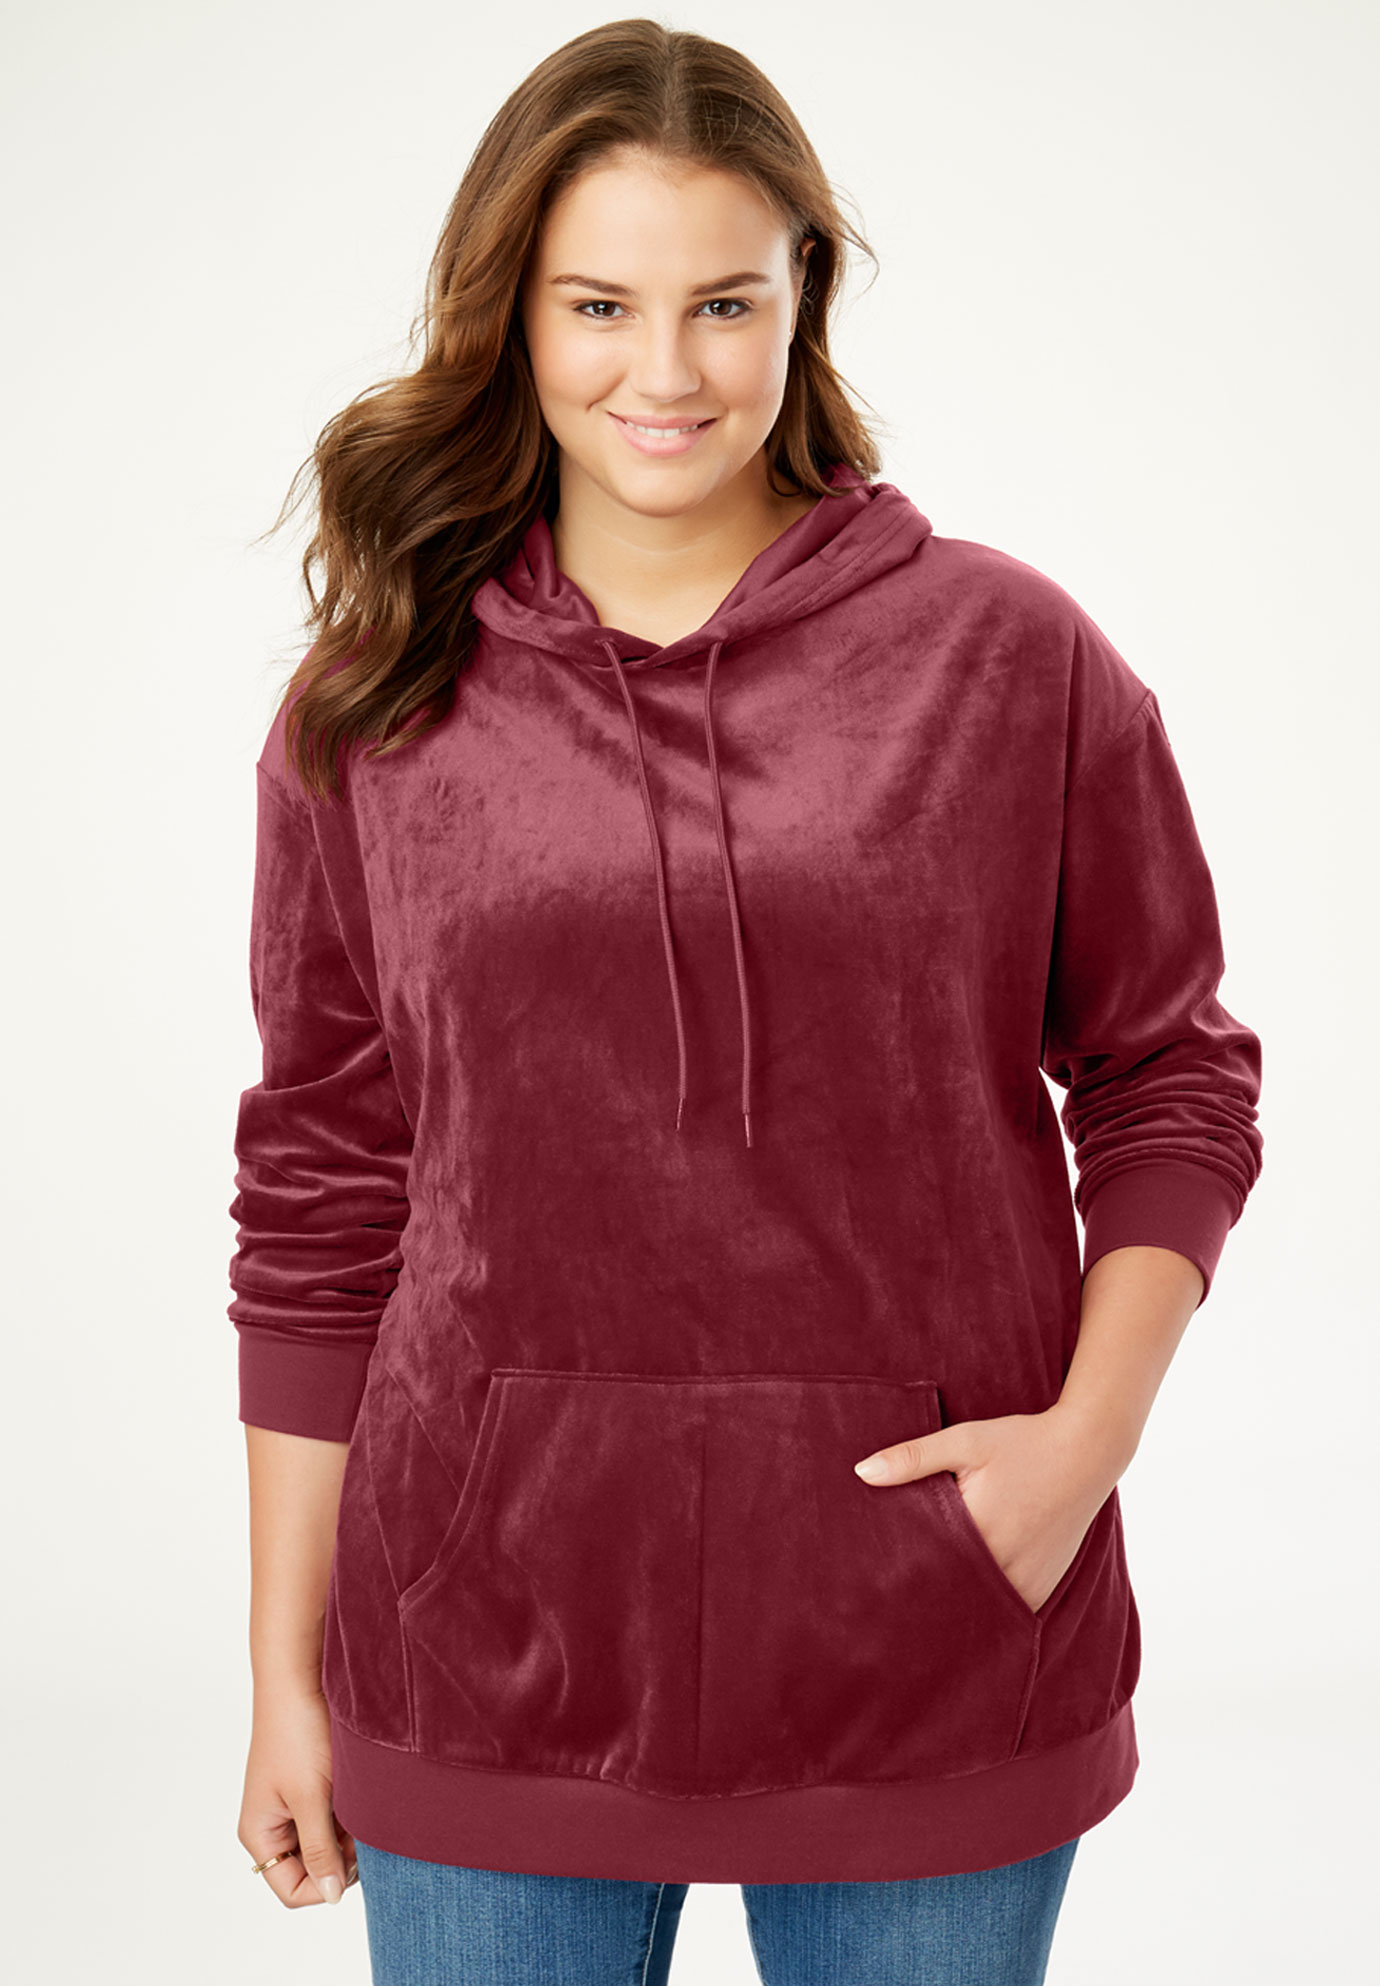 Velour Hooded Sweatshirt | Fullbeauty Outlet